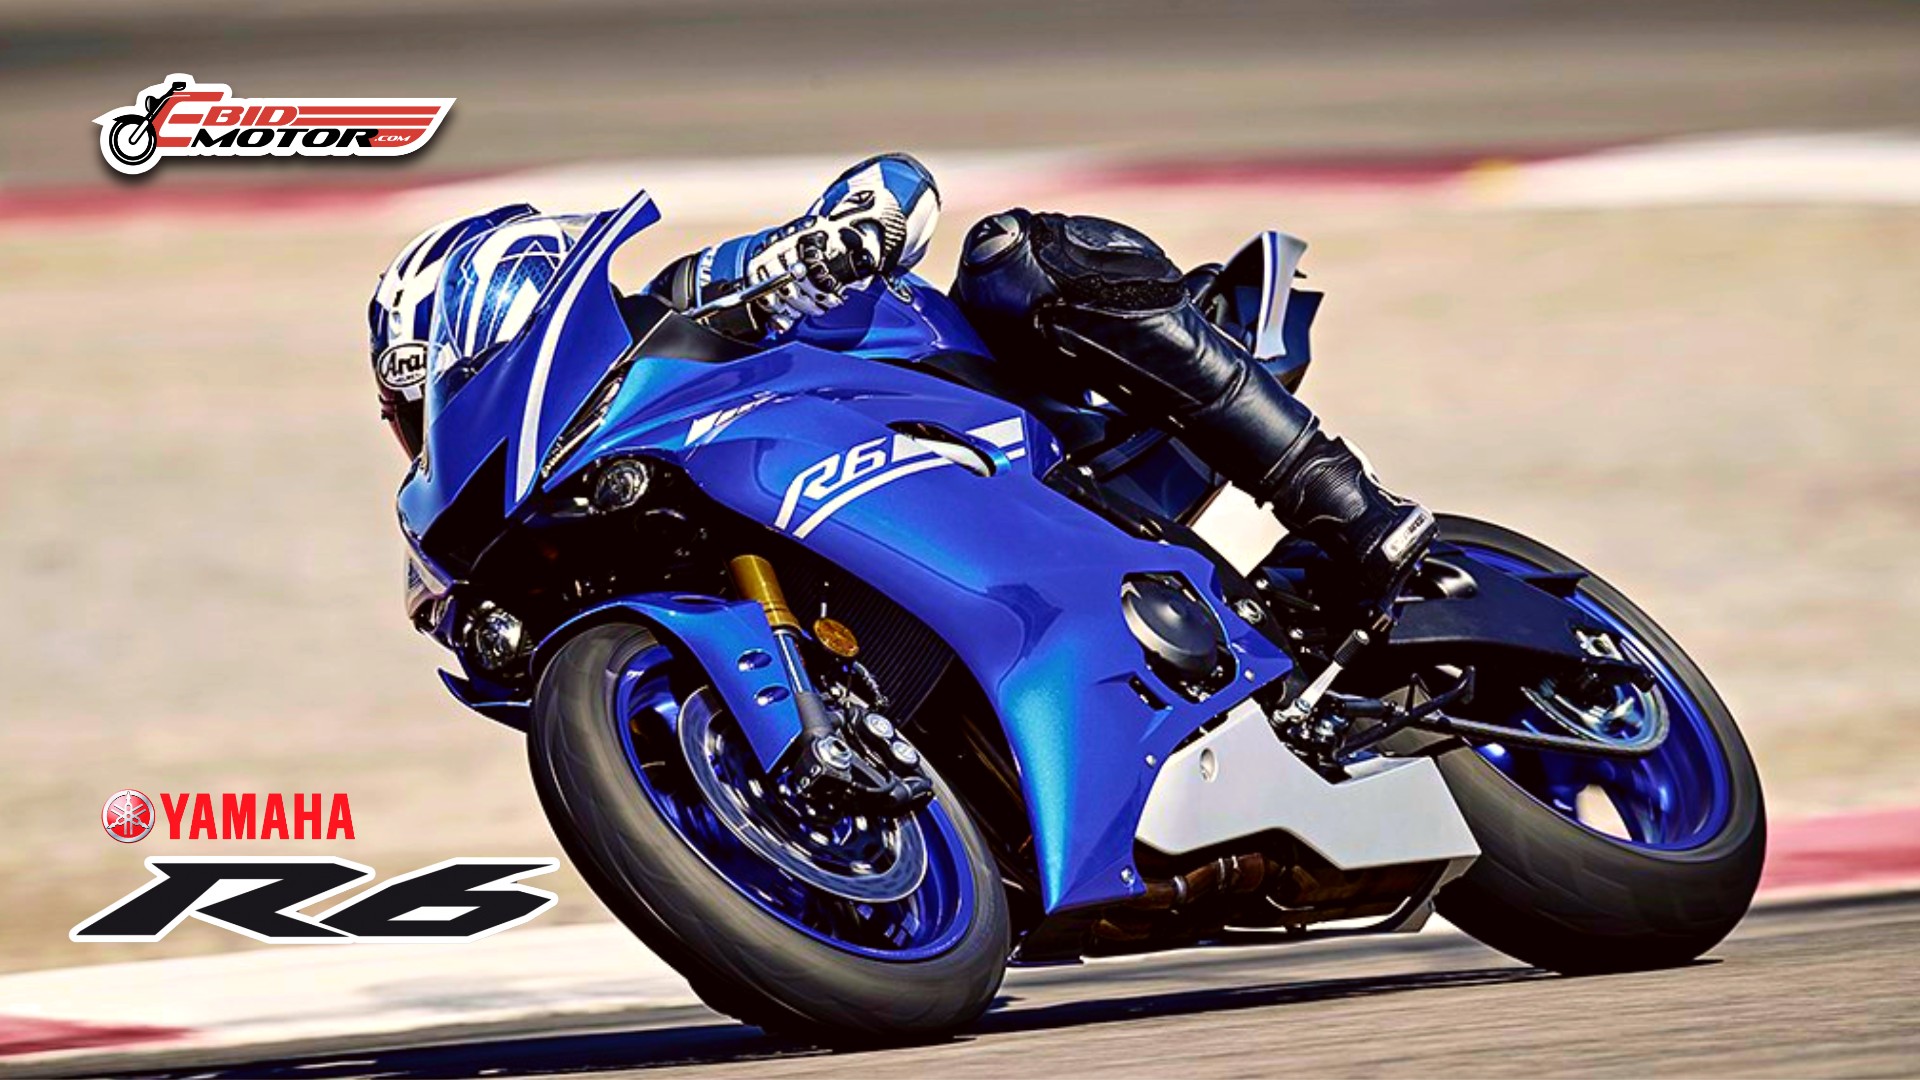 Sportbike 4 Cylinder Yang Dilupakan? Ini Review Ringkas Yamaha R6!